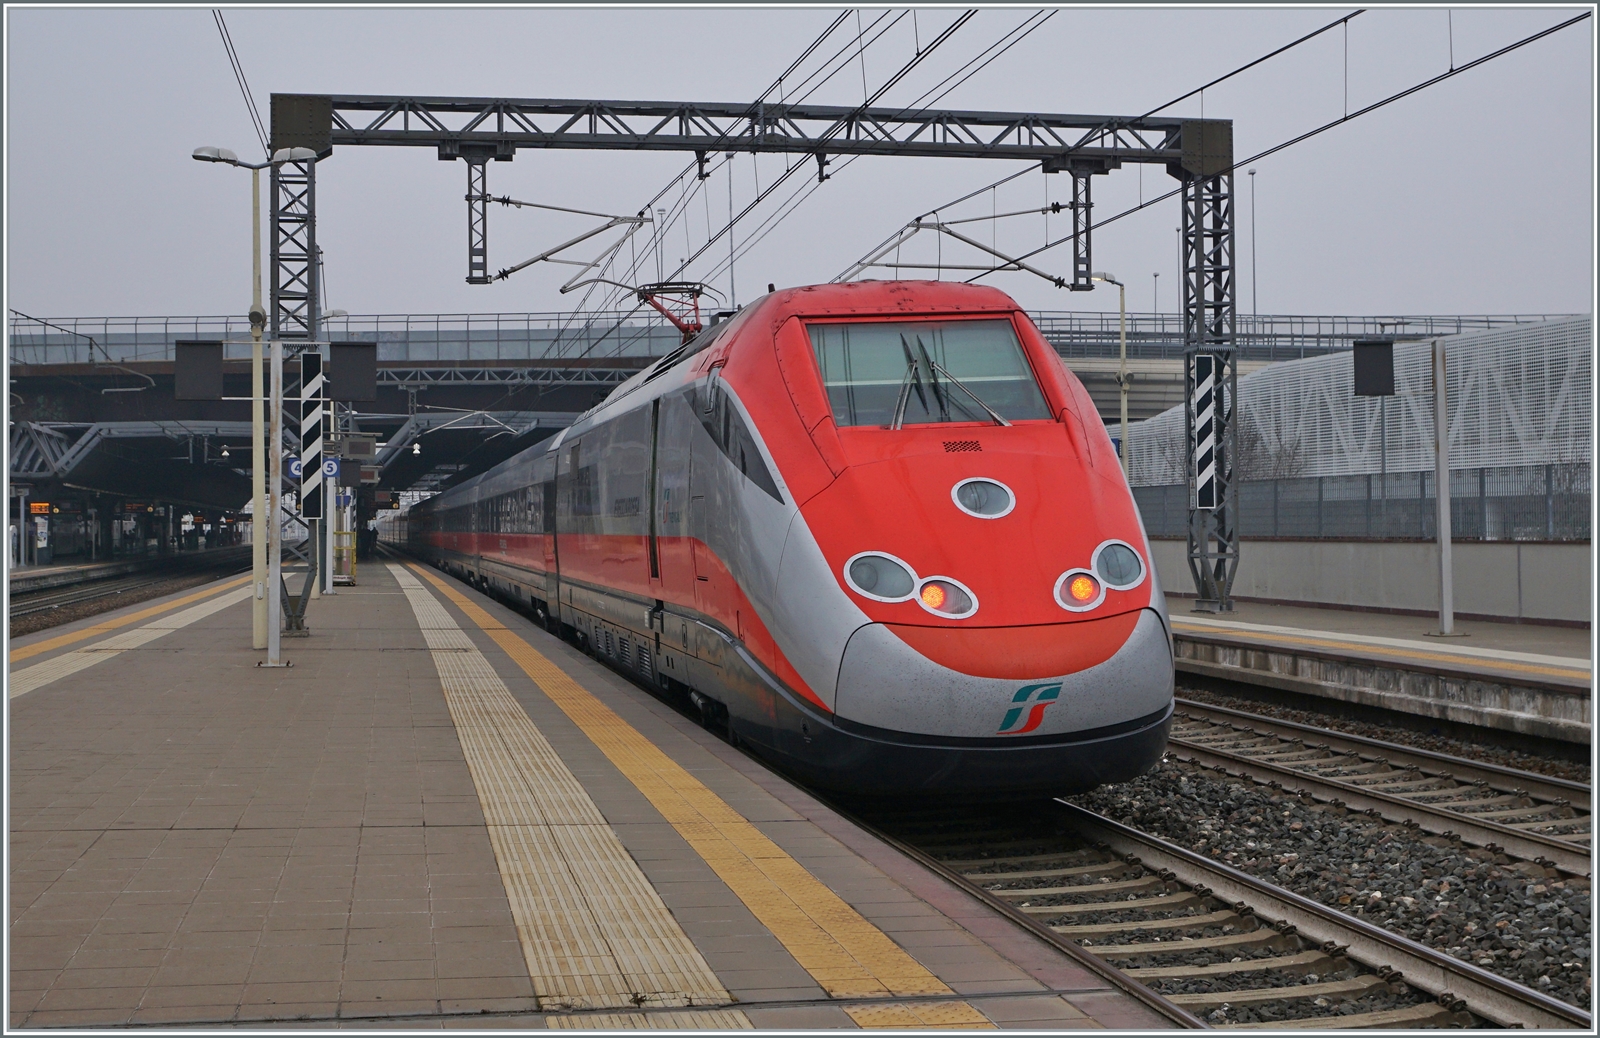 Ein FS Trenitalia ETR 500 auf der Fahrt nach Torino beim Halt im Bahnhof von Rho Fiera. 

24. Feb. 2023 